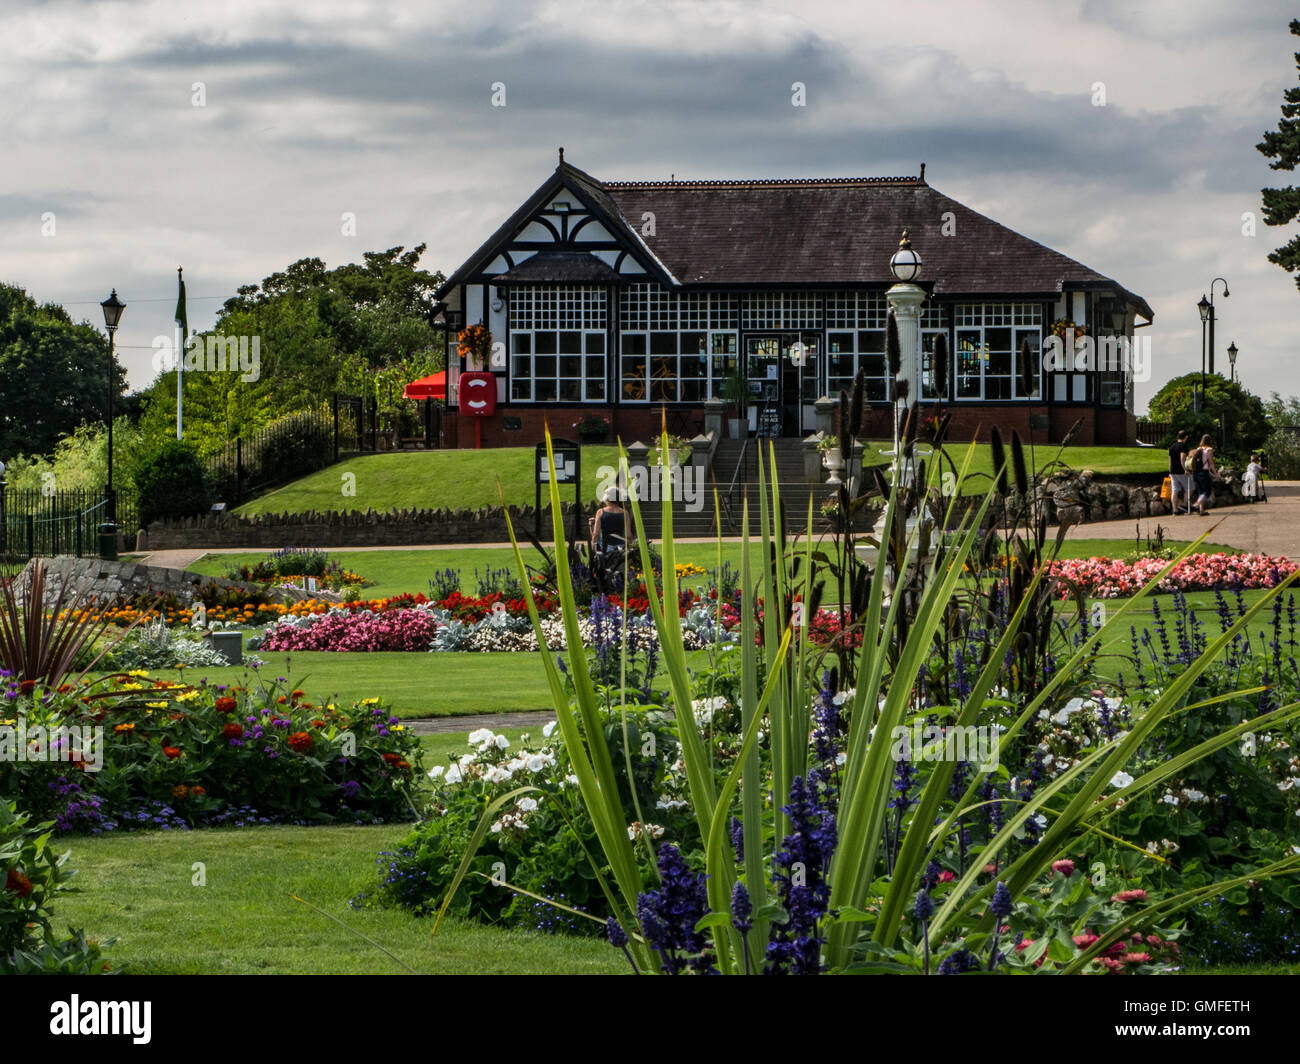 Congleton Park and pavilion, Congleton, Cheshire, England, UK Stock Photo